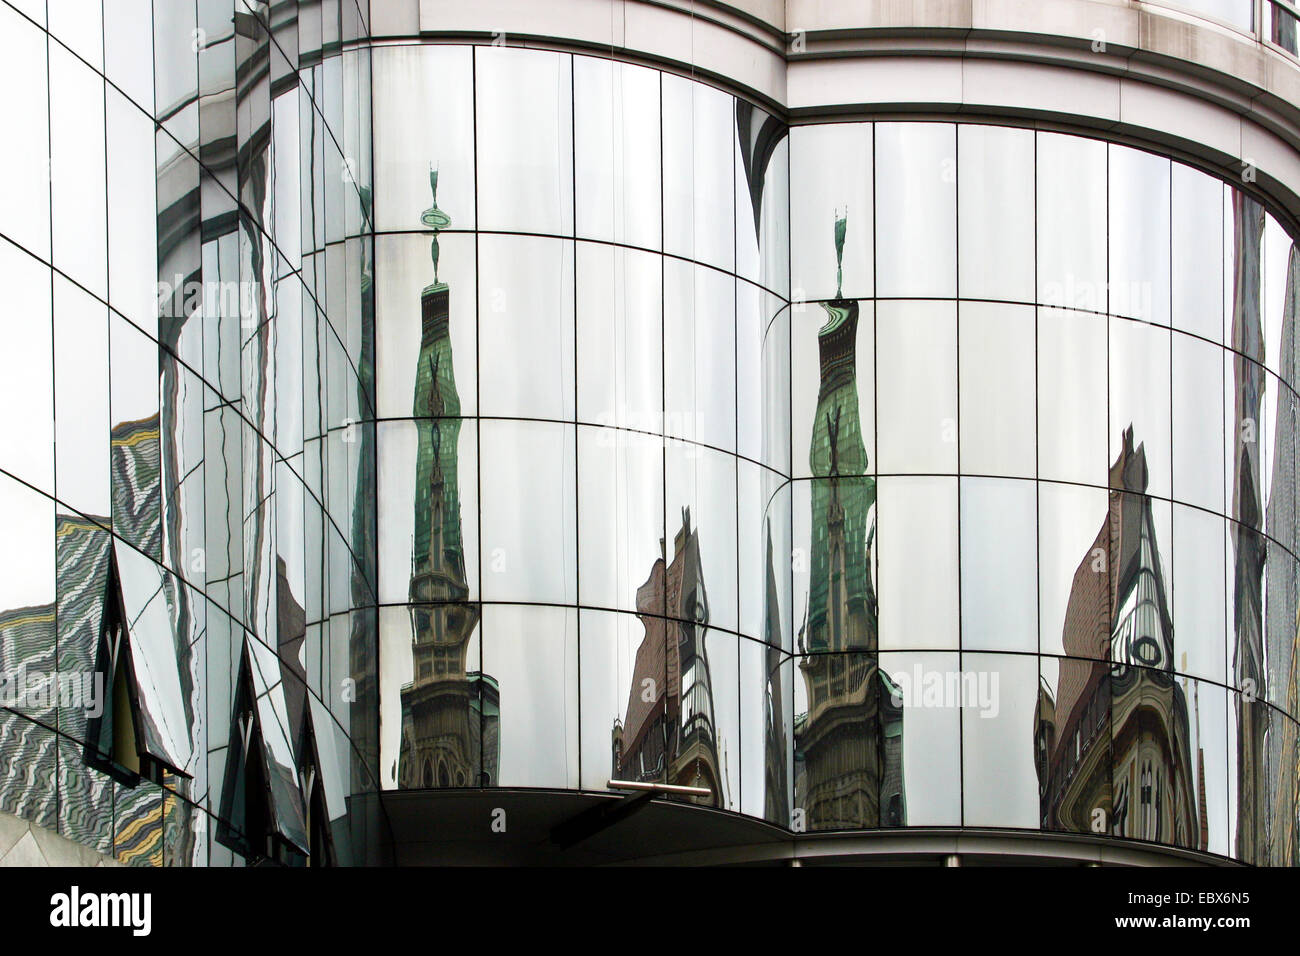 Dans la maison reflecions Haas à Stephansplatz, l'Autriche, Vienne Banque D'Images